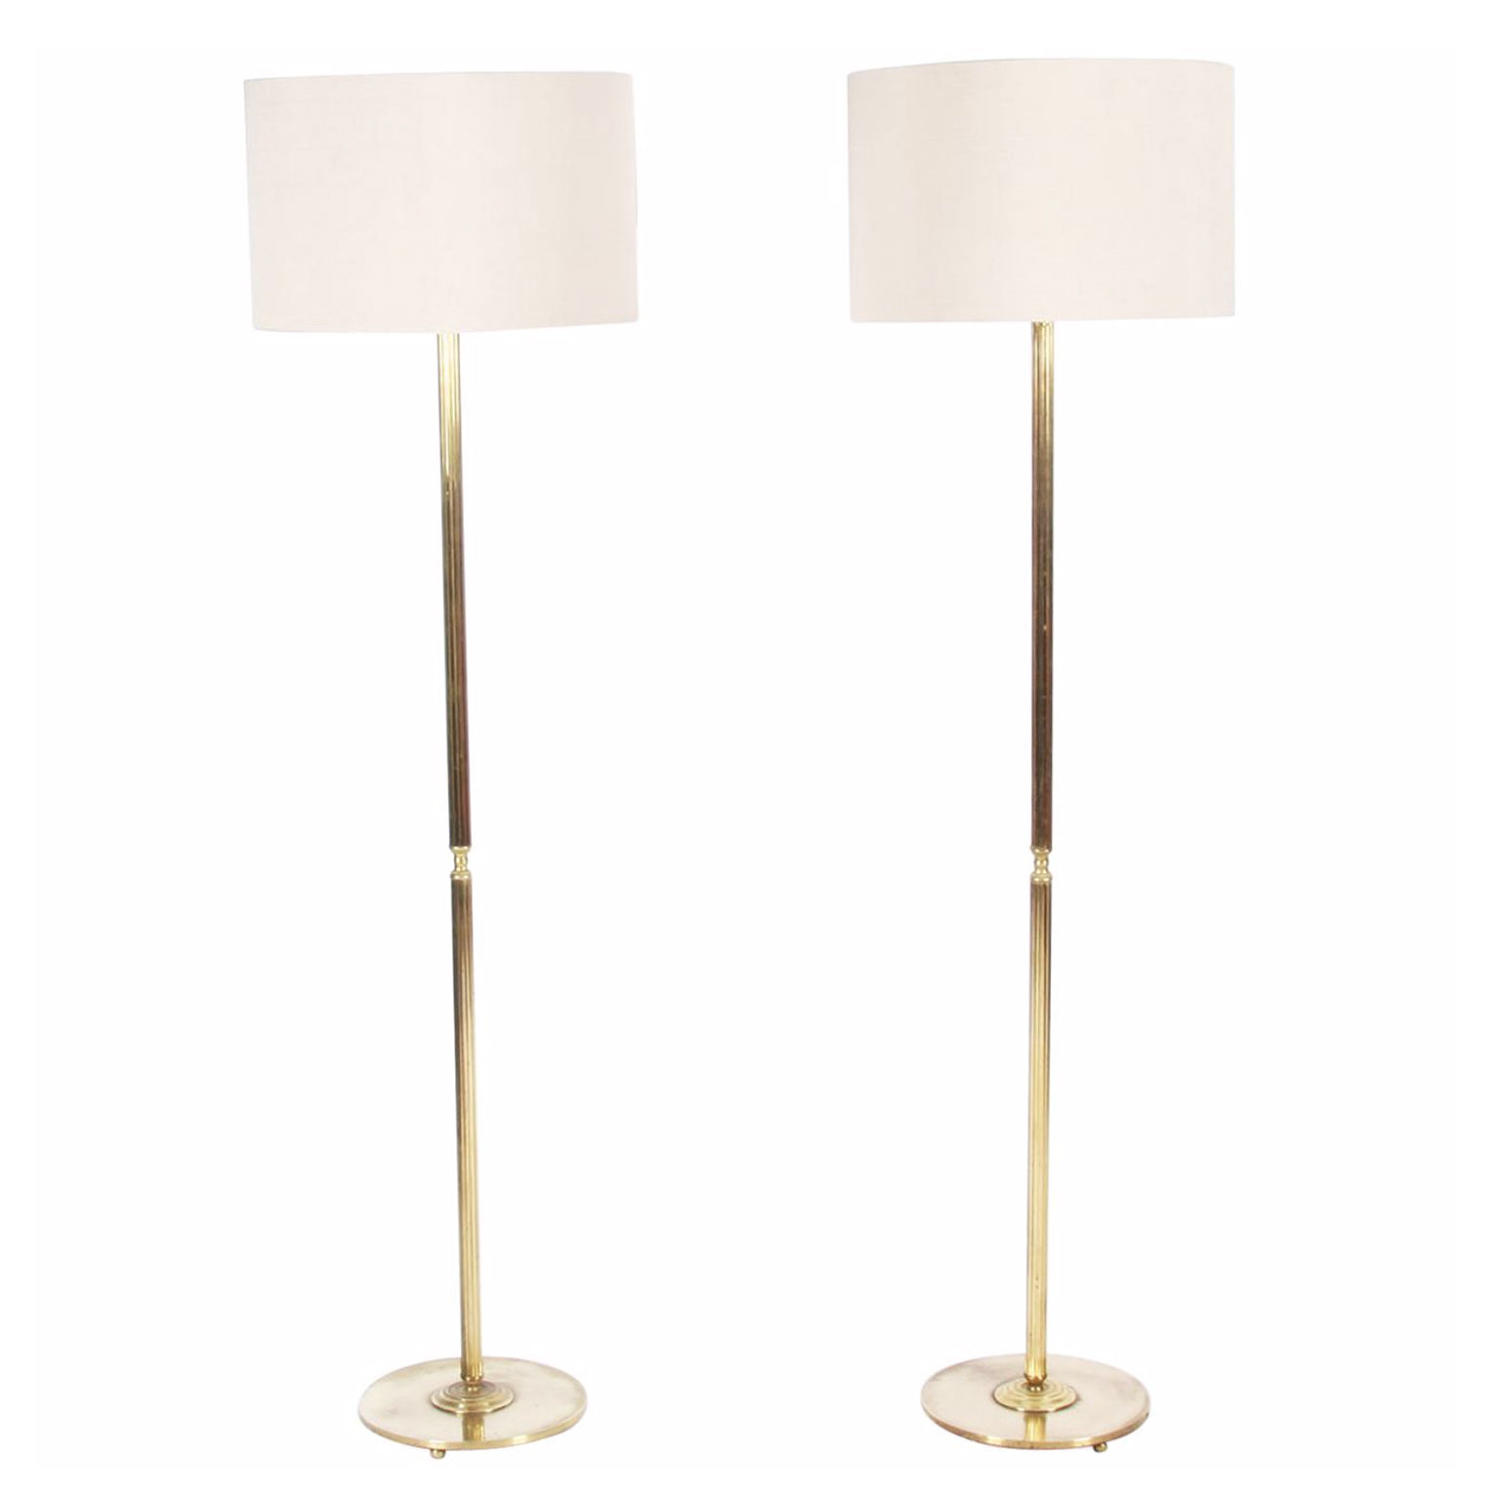 Pair of Reeded Brass Floor Lamps